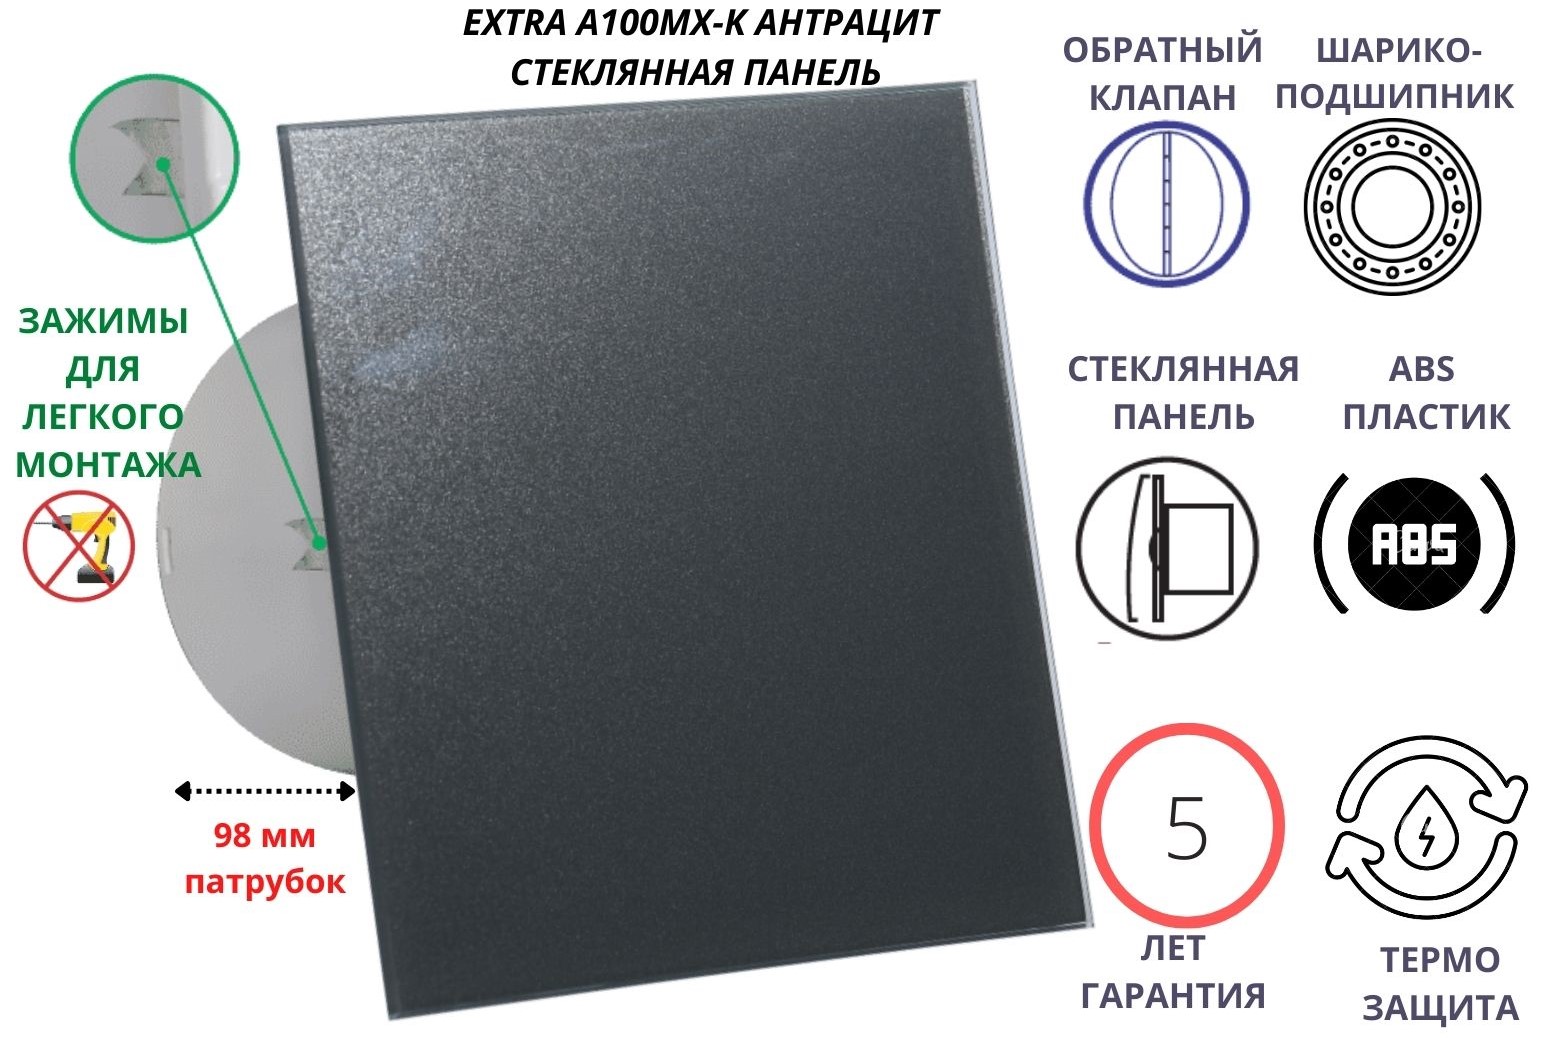 Вентилятор D100мм со стеклянной панелью цвета антрацит EXTRA A100МX-K, Сербия